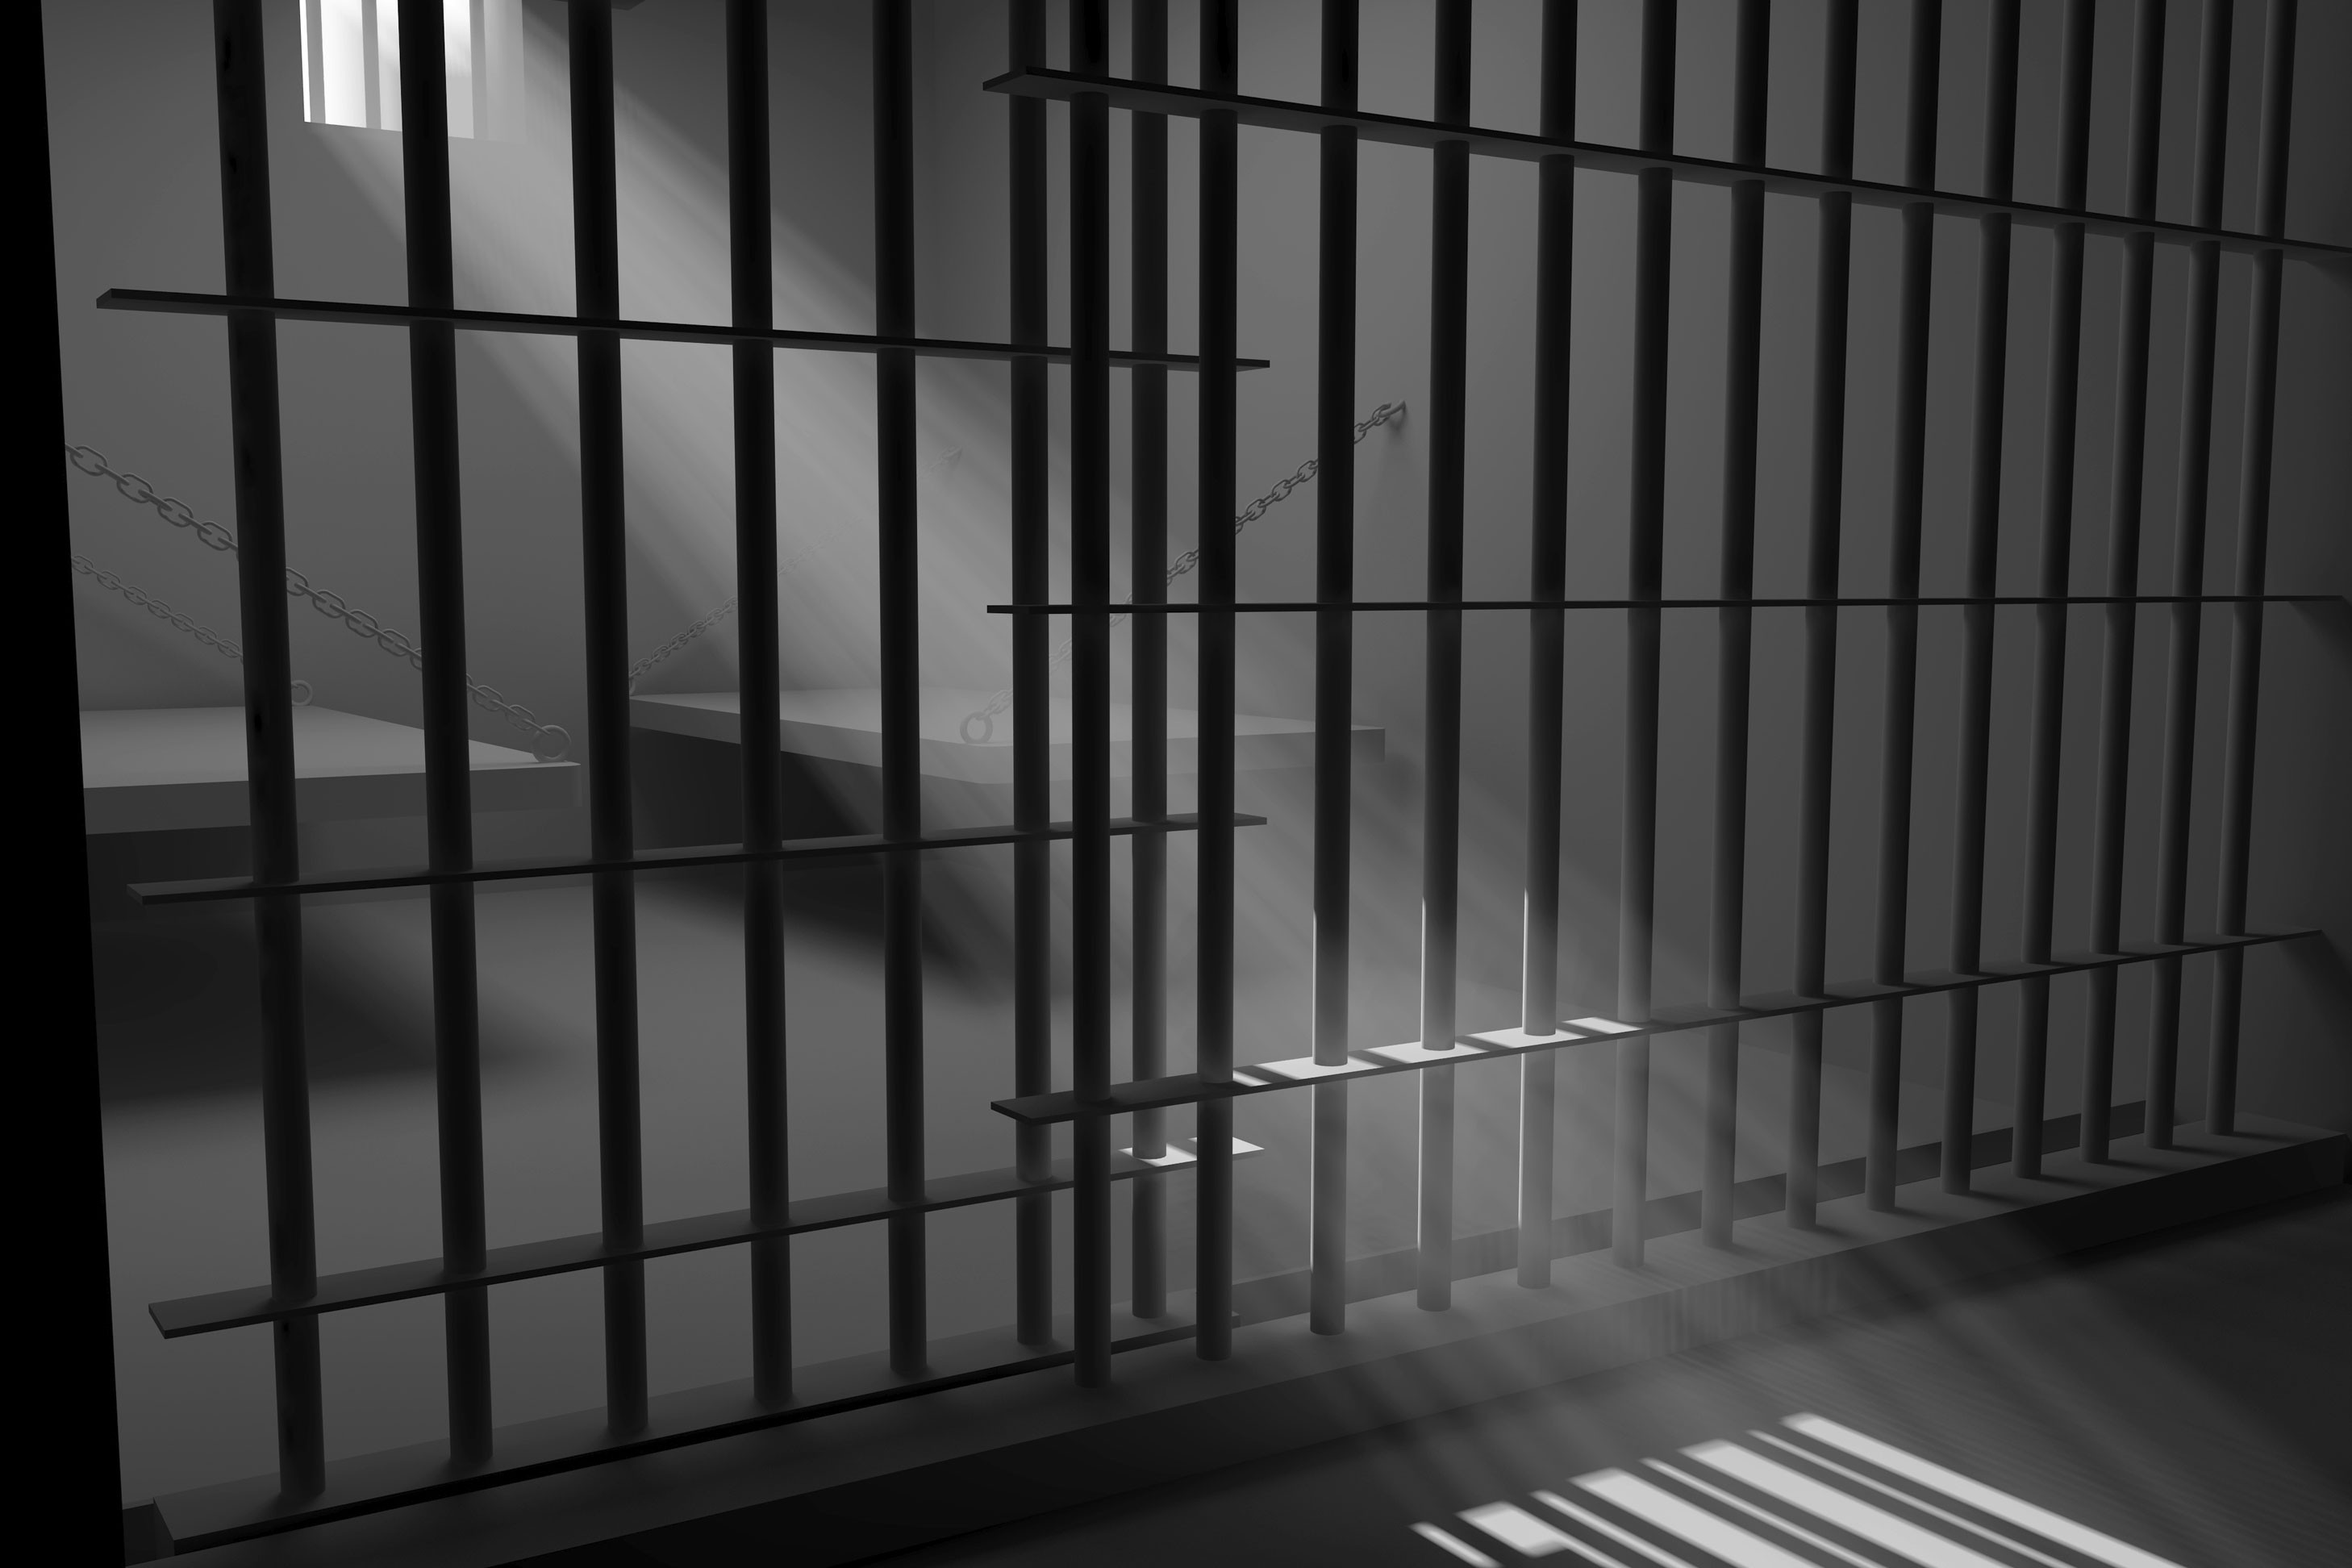 Βασανιστήριο ο υπερπληθυσμός στις φυλακές σύμφωνα με τον ΟΗΕ